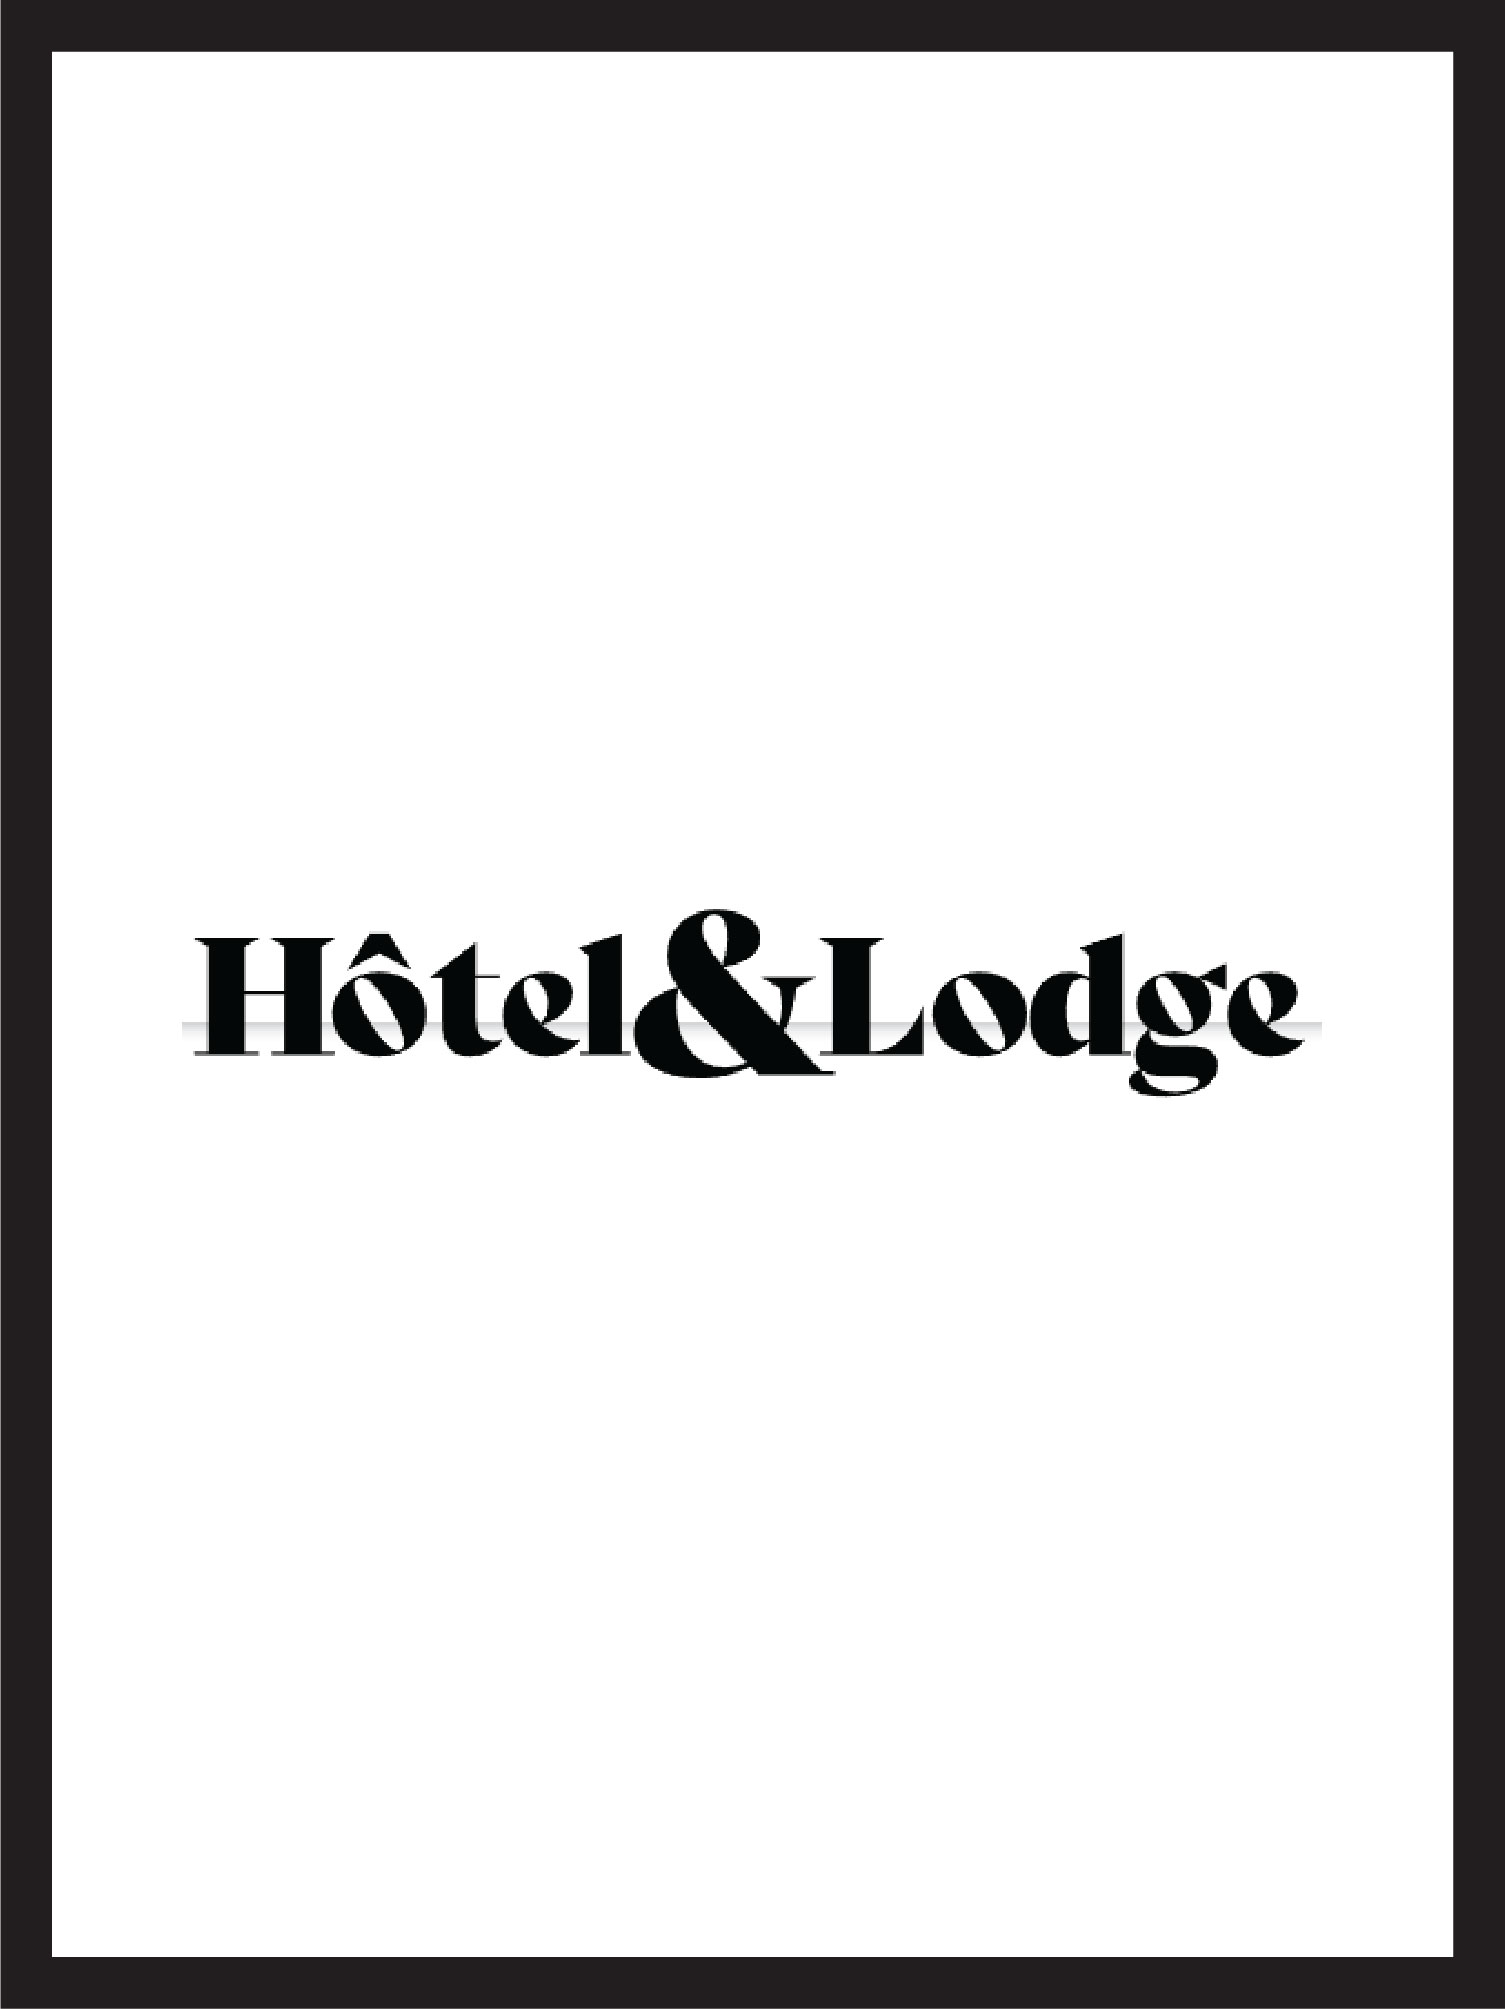 logo of the magazine hotel & lodge